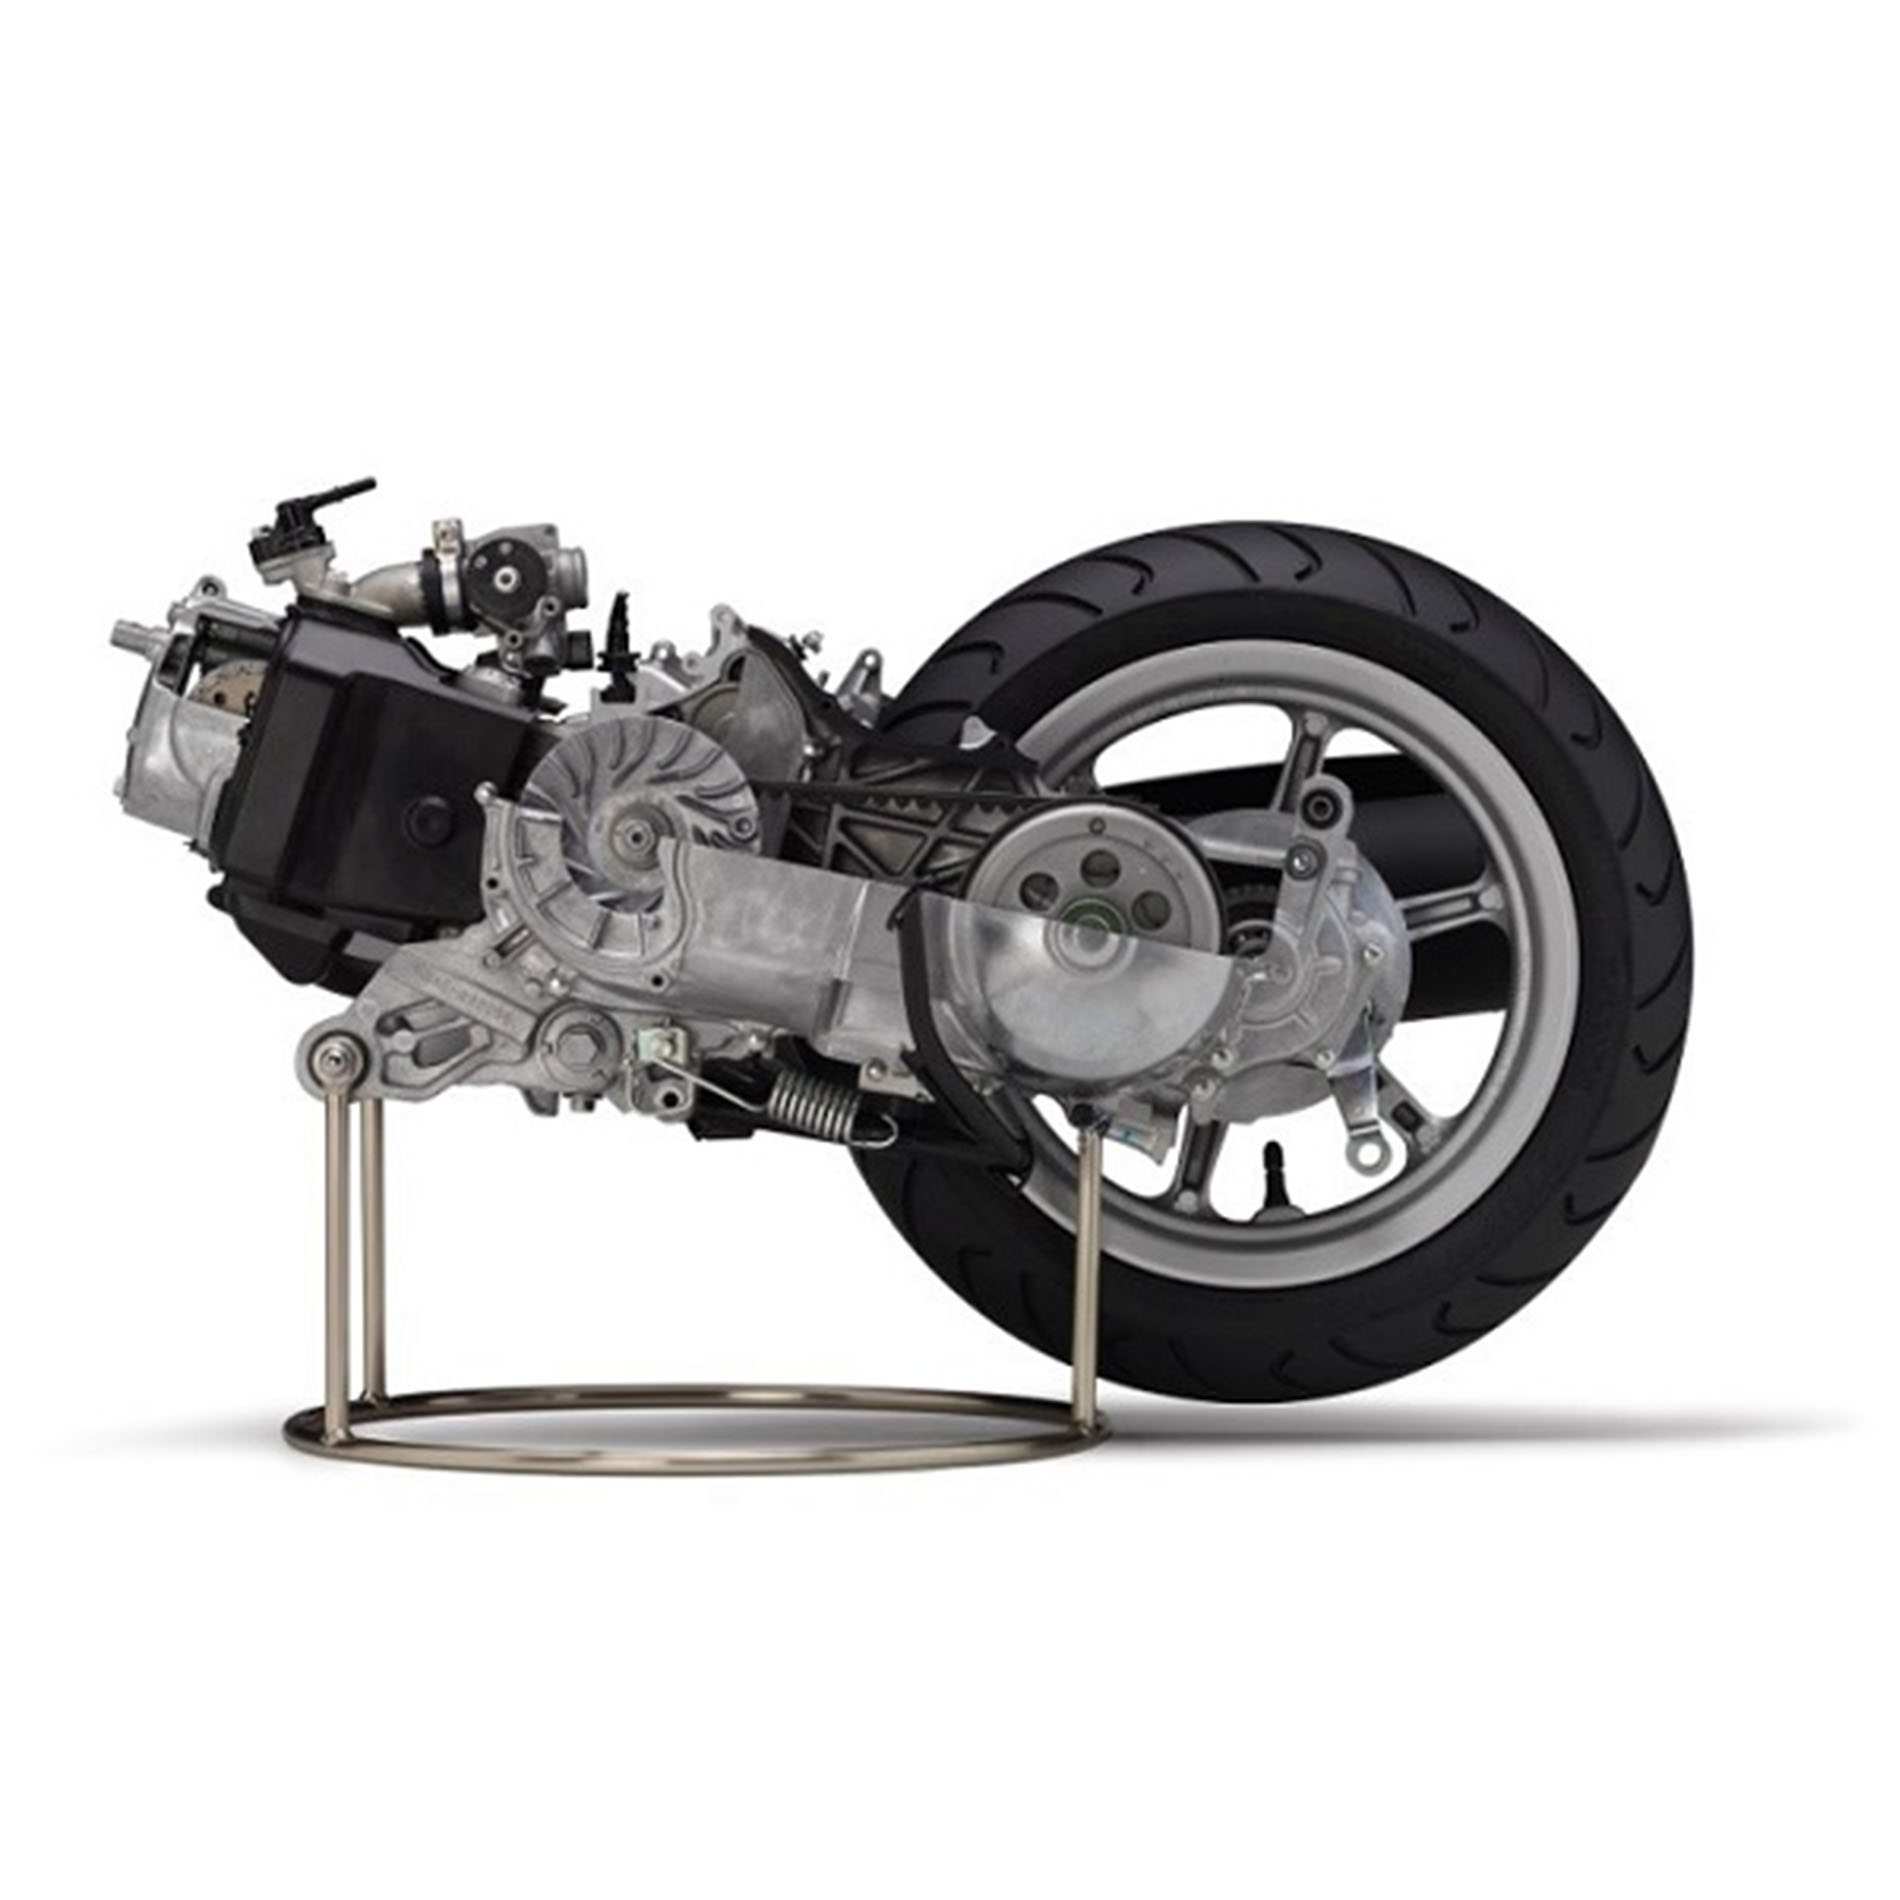 Động cơ đốt trong kiểu pittong được sử dụng trên hầu hết các loại xe gắn máy, xe moto hiện nay